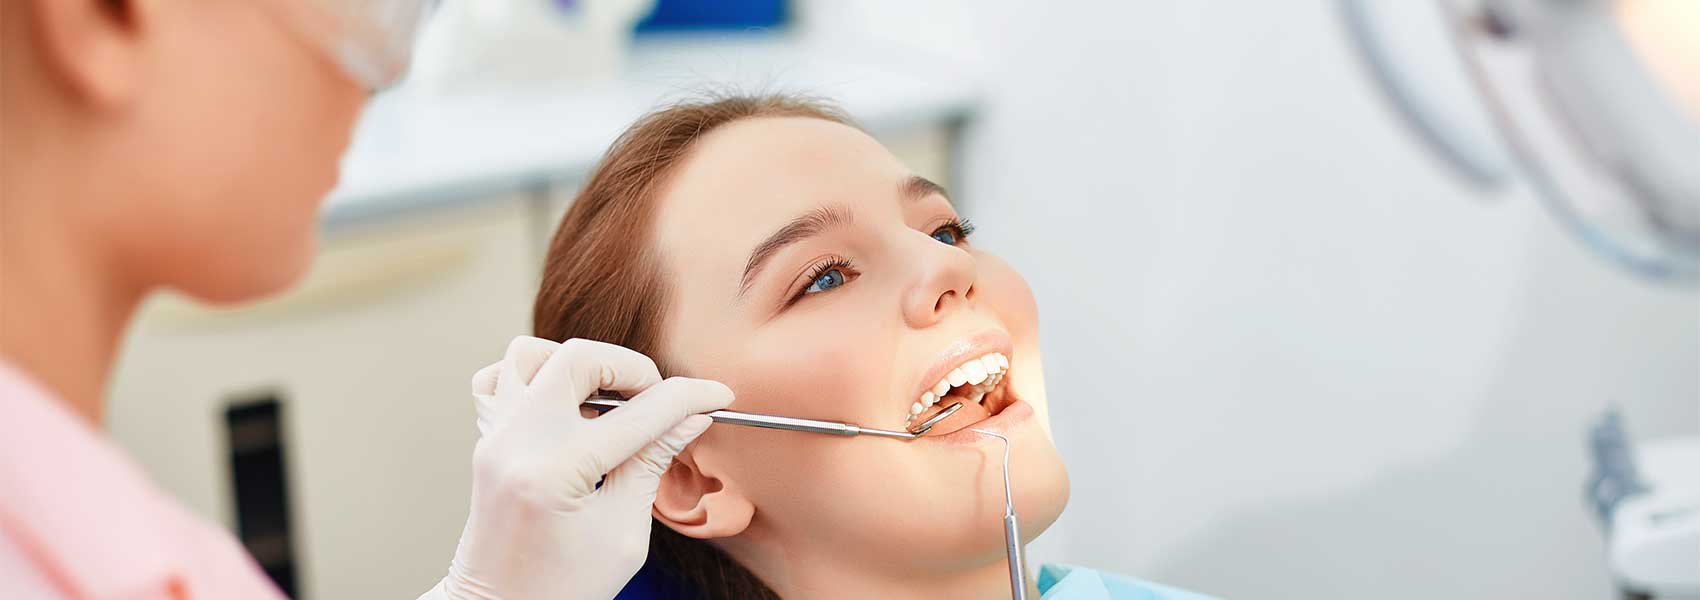 Dentist checking cavities